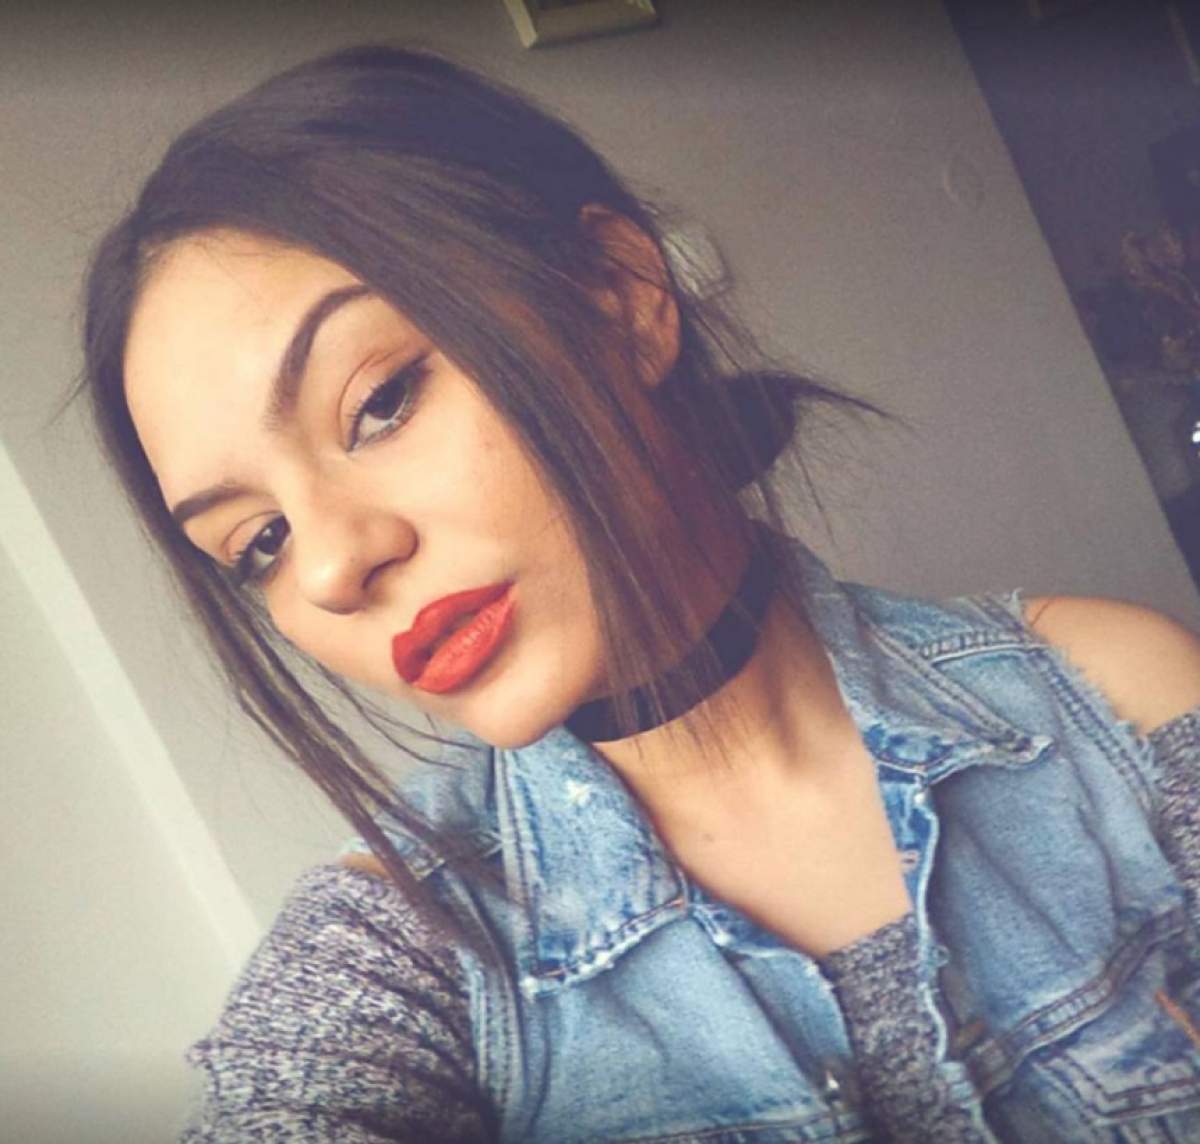 Detalii terifiante despre tânăra de 19 ani, ucisă în București. Raluca provenea dintr-o familie dezbinată